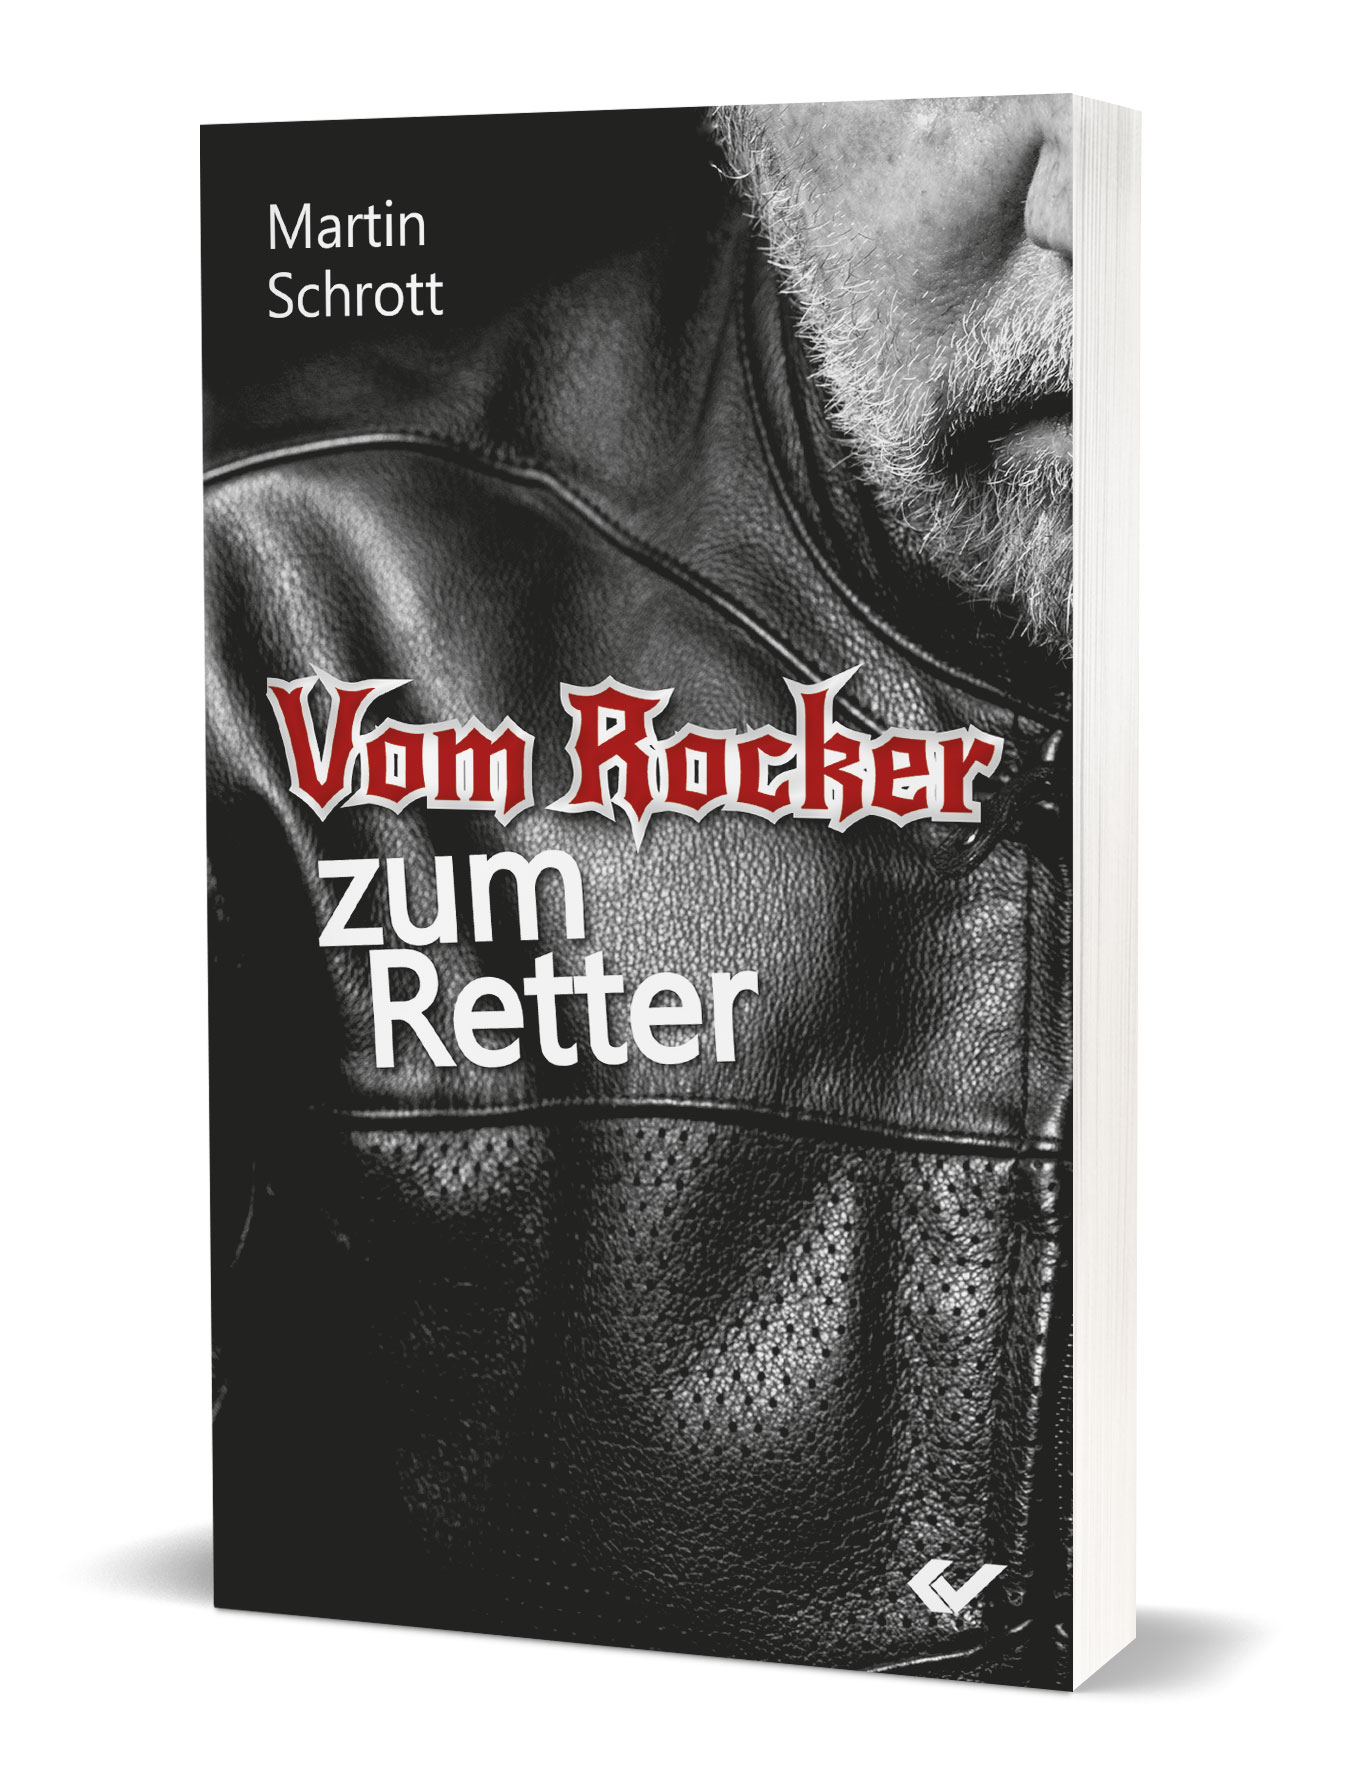 Martin Schrott: Vom Rocker zum Retter